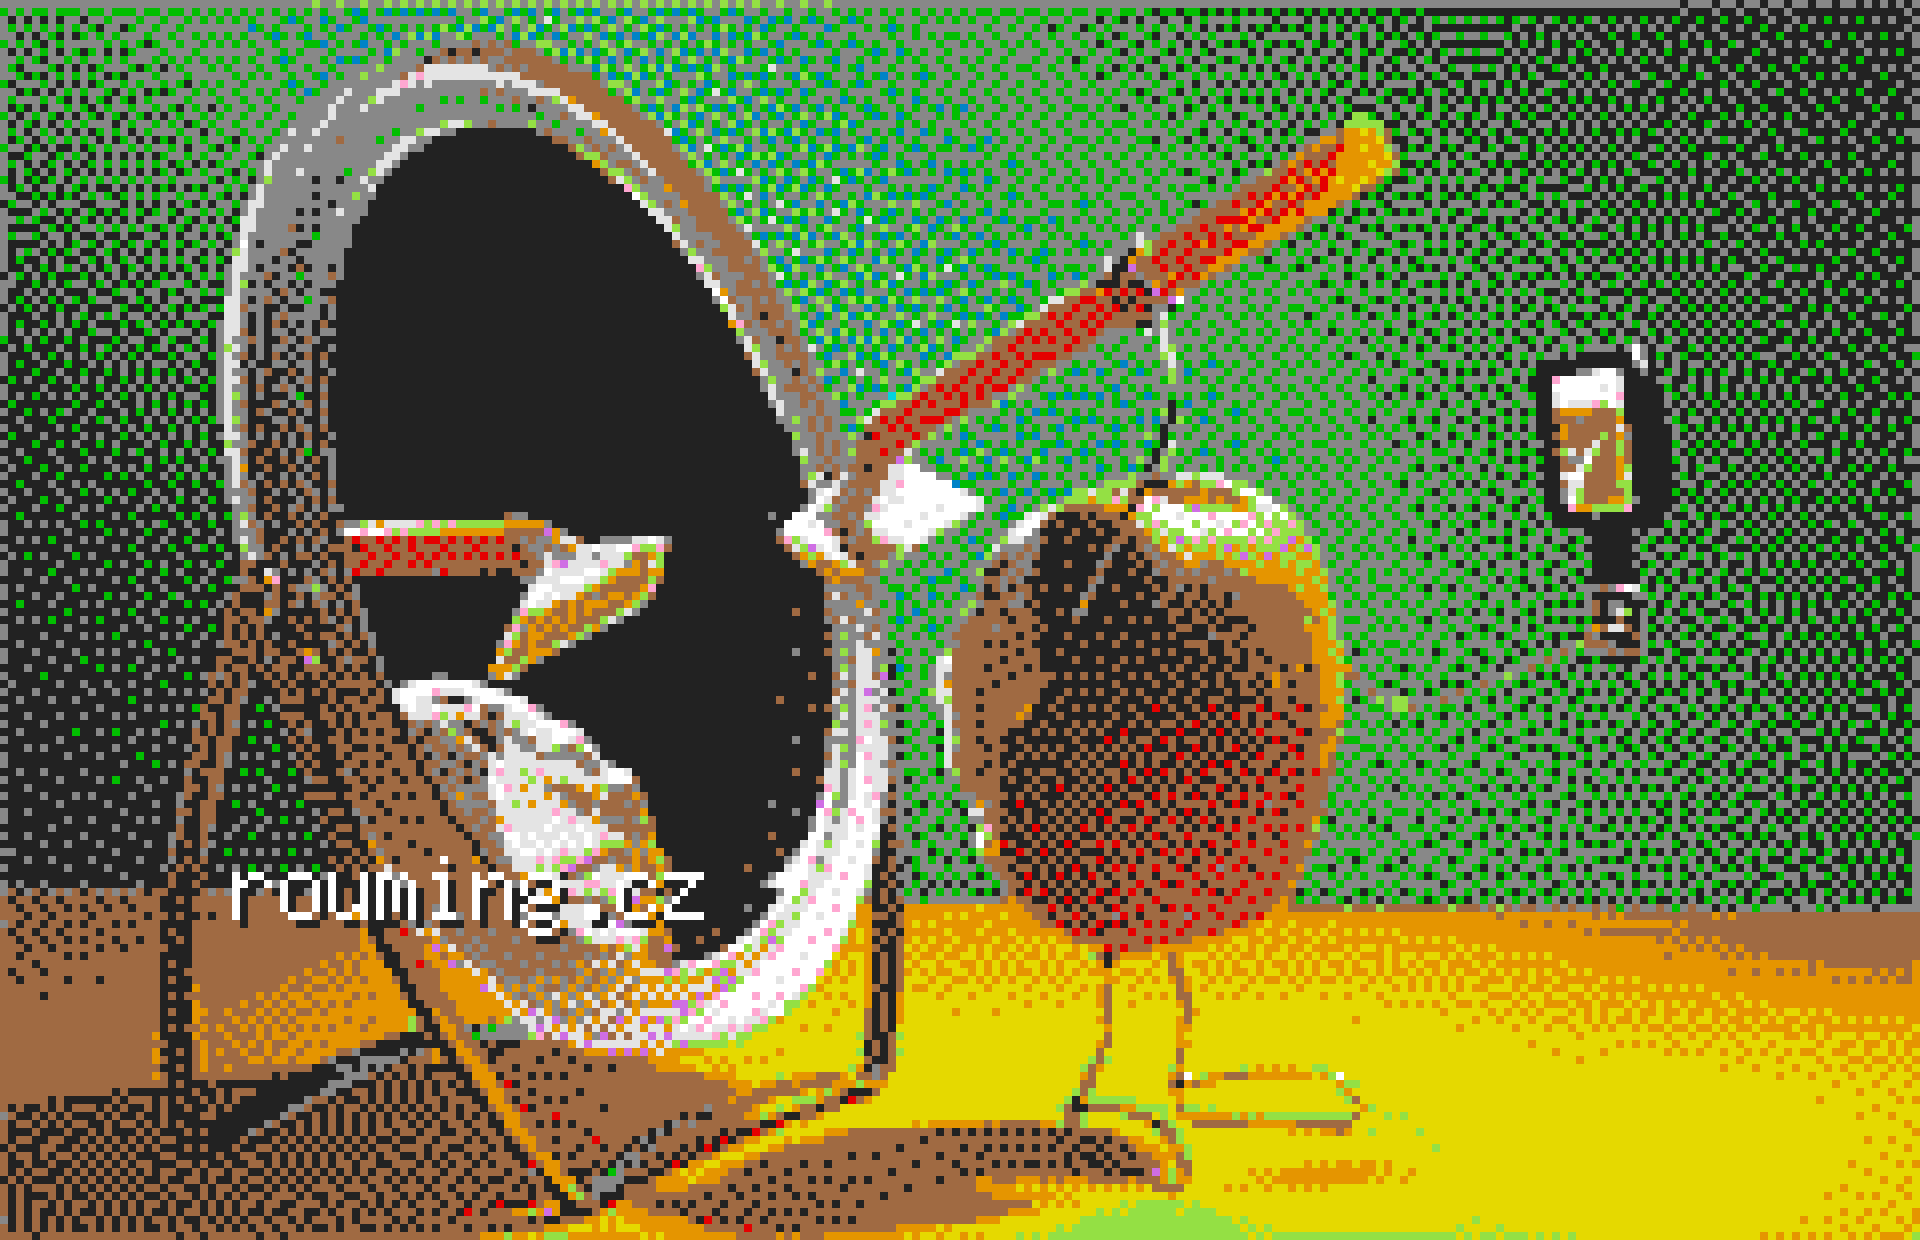 kiwi-pixelcanvas-palette-hd.png